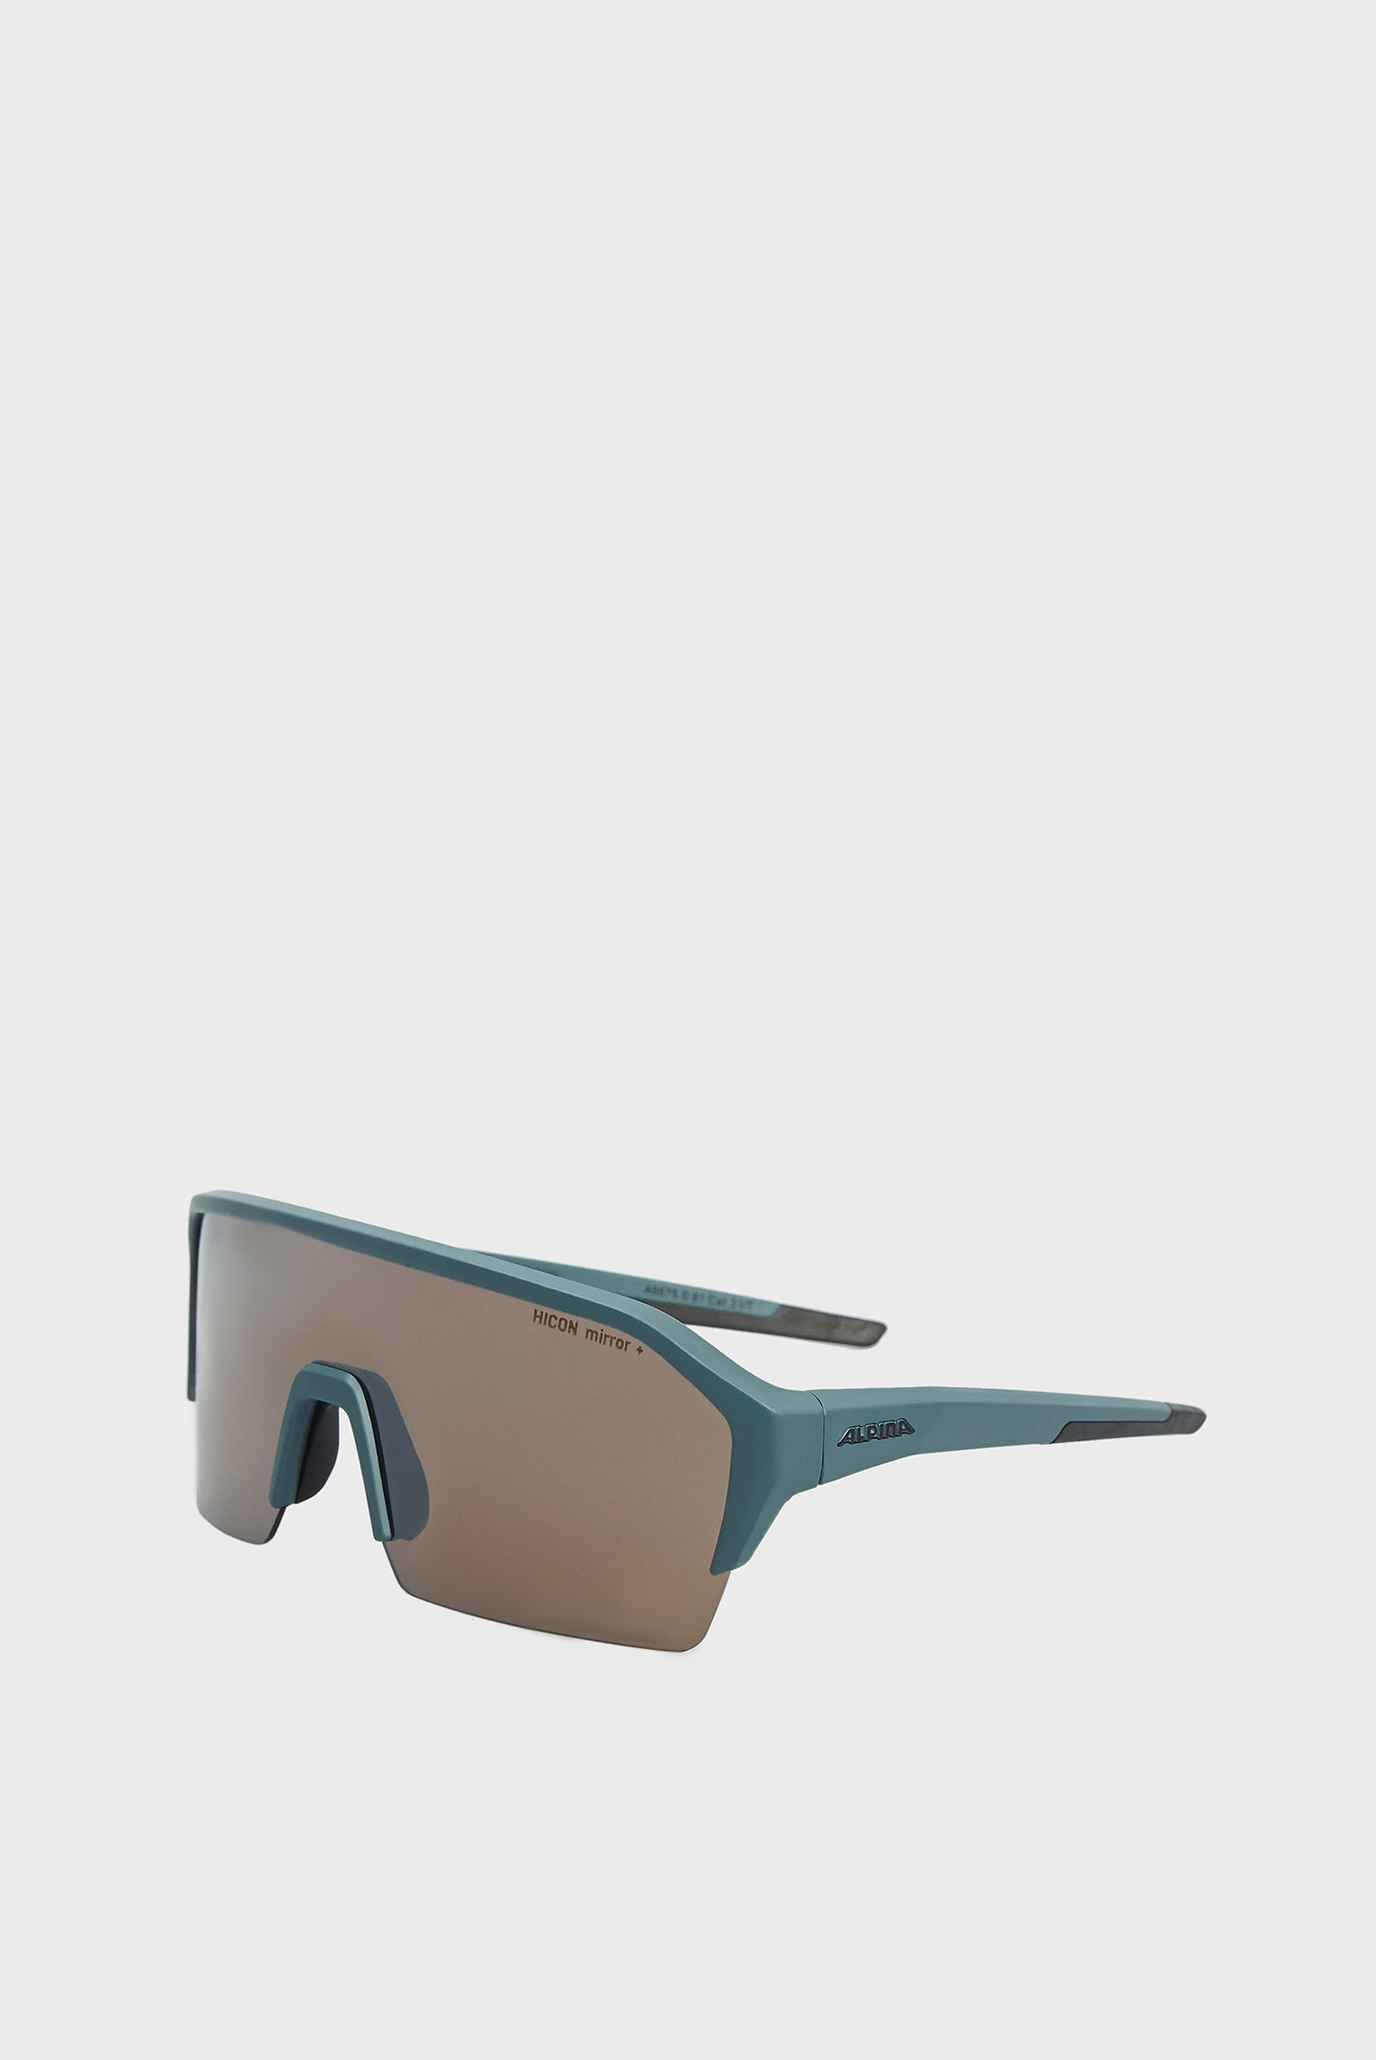 Сірі сонцезахисні окуляри RAM HR HM + 1